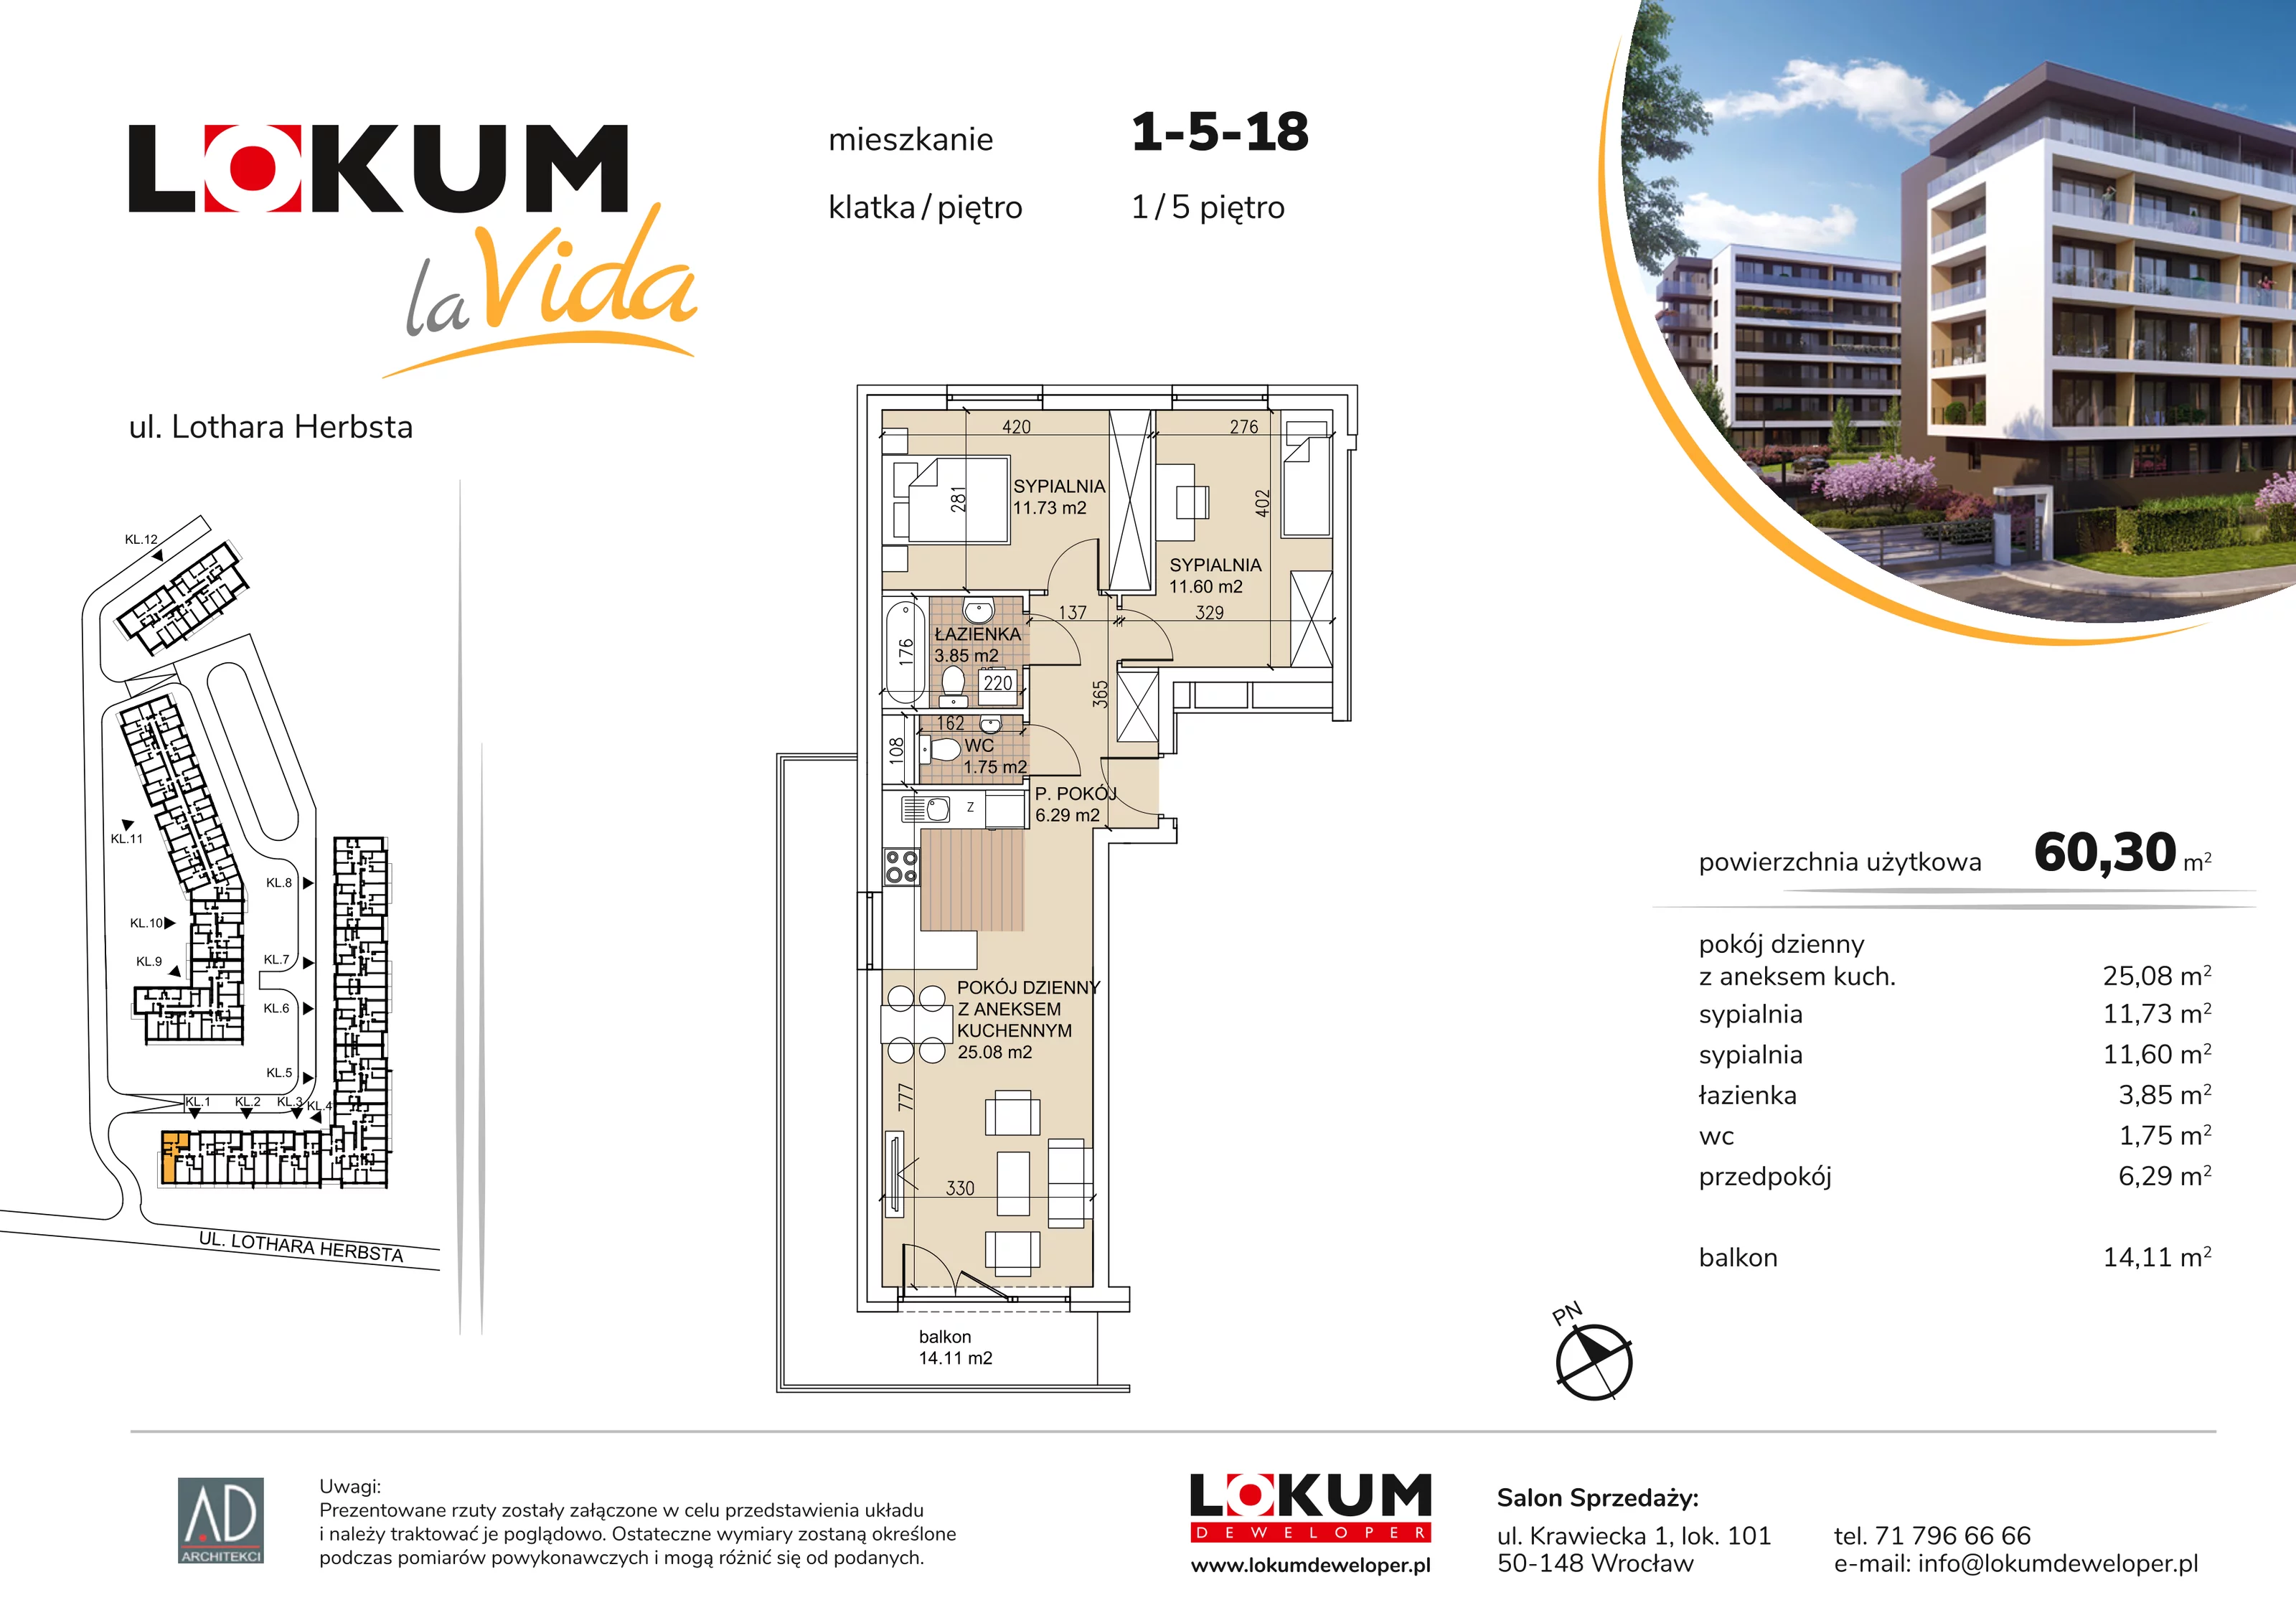 Mieszkanie 60,30 m², piętro 5, oferta nr 1-5-18, Lokum la Vida, Wrocław, Sołtysowice, ul. Lothara Herbsta